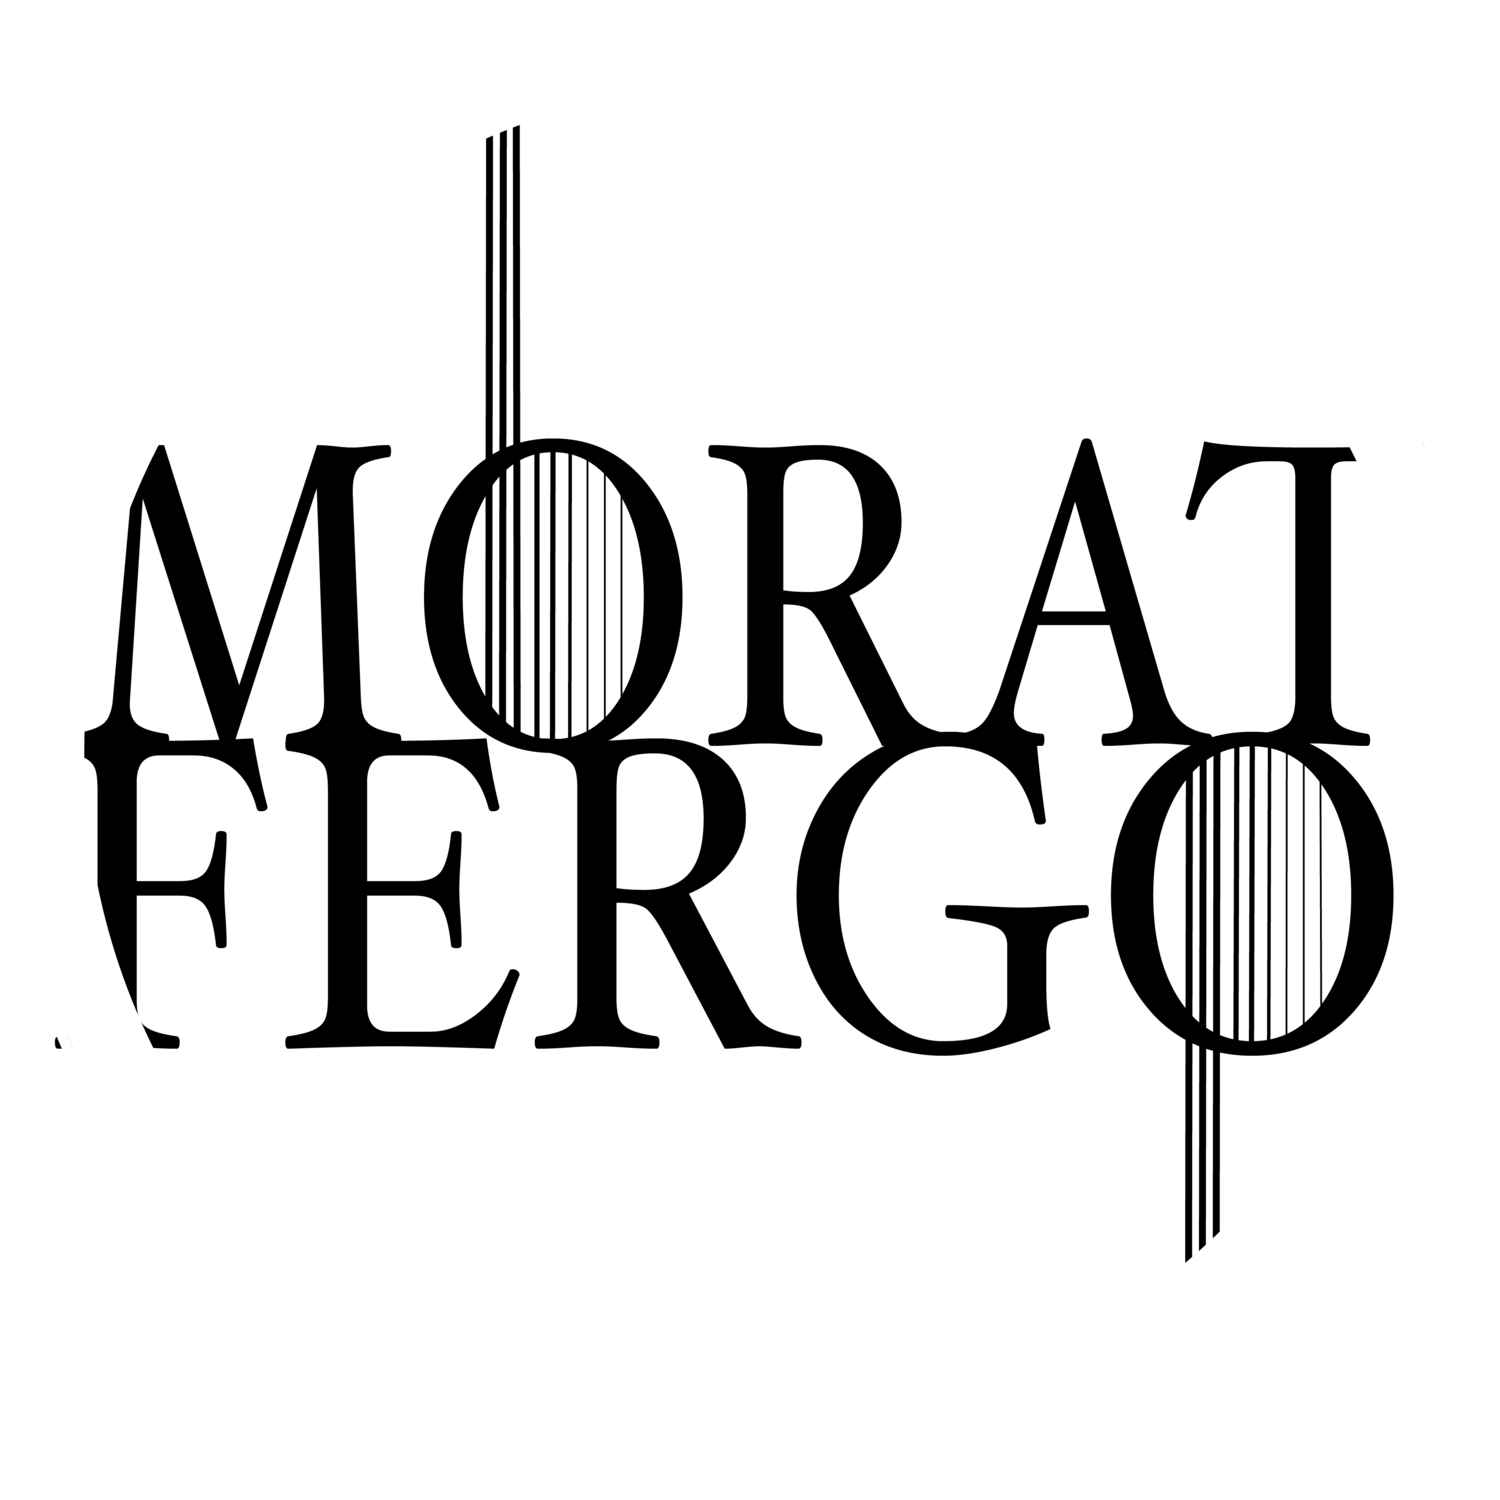 Duo Morat-Fergo